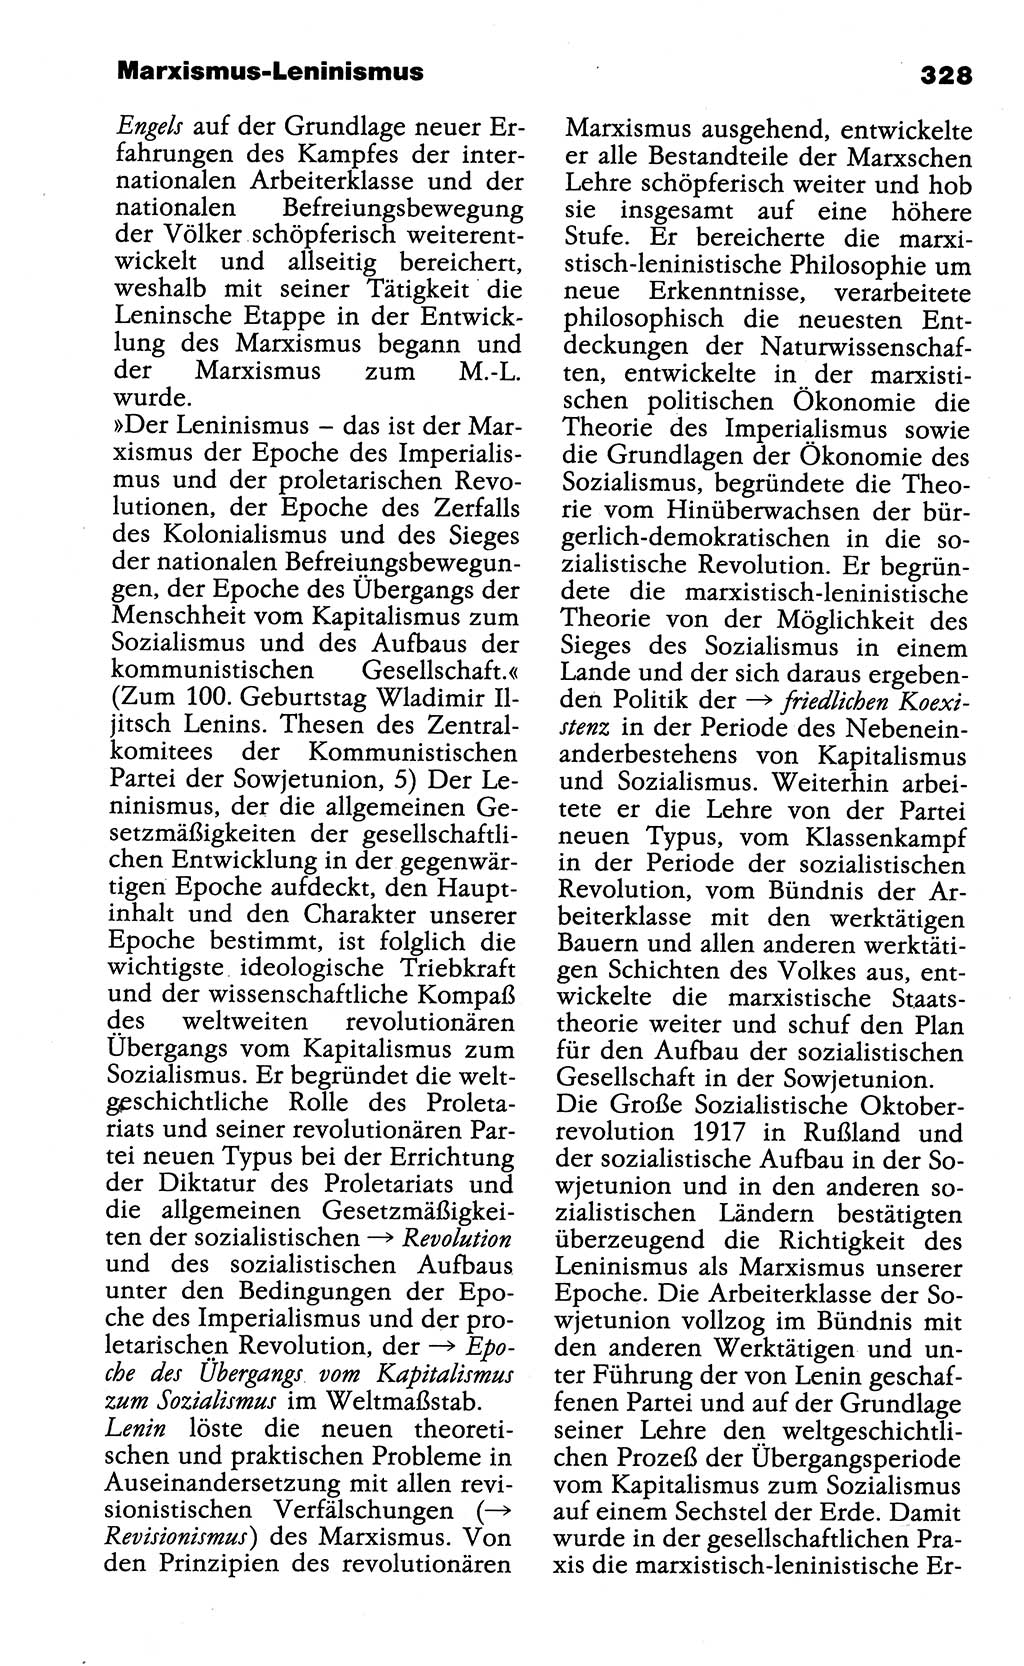 Wörterbuch der marxistisch-leninistischen Philosophie [Deutsche Demokratische Republik (DDR)] 1985, Seite 328 (Wb. ML Phil. DDR 1985, S. 328)